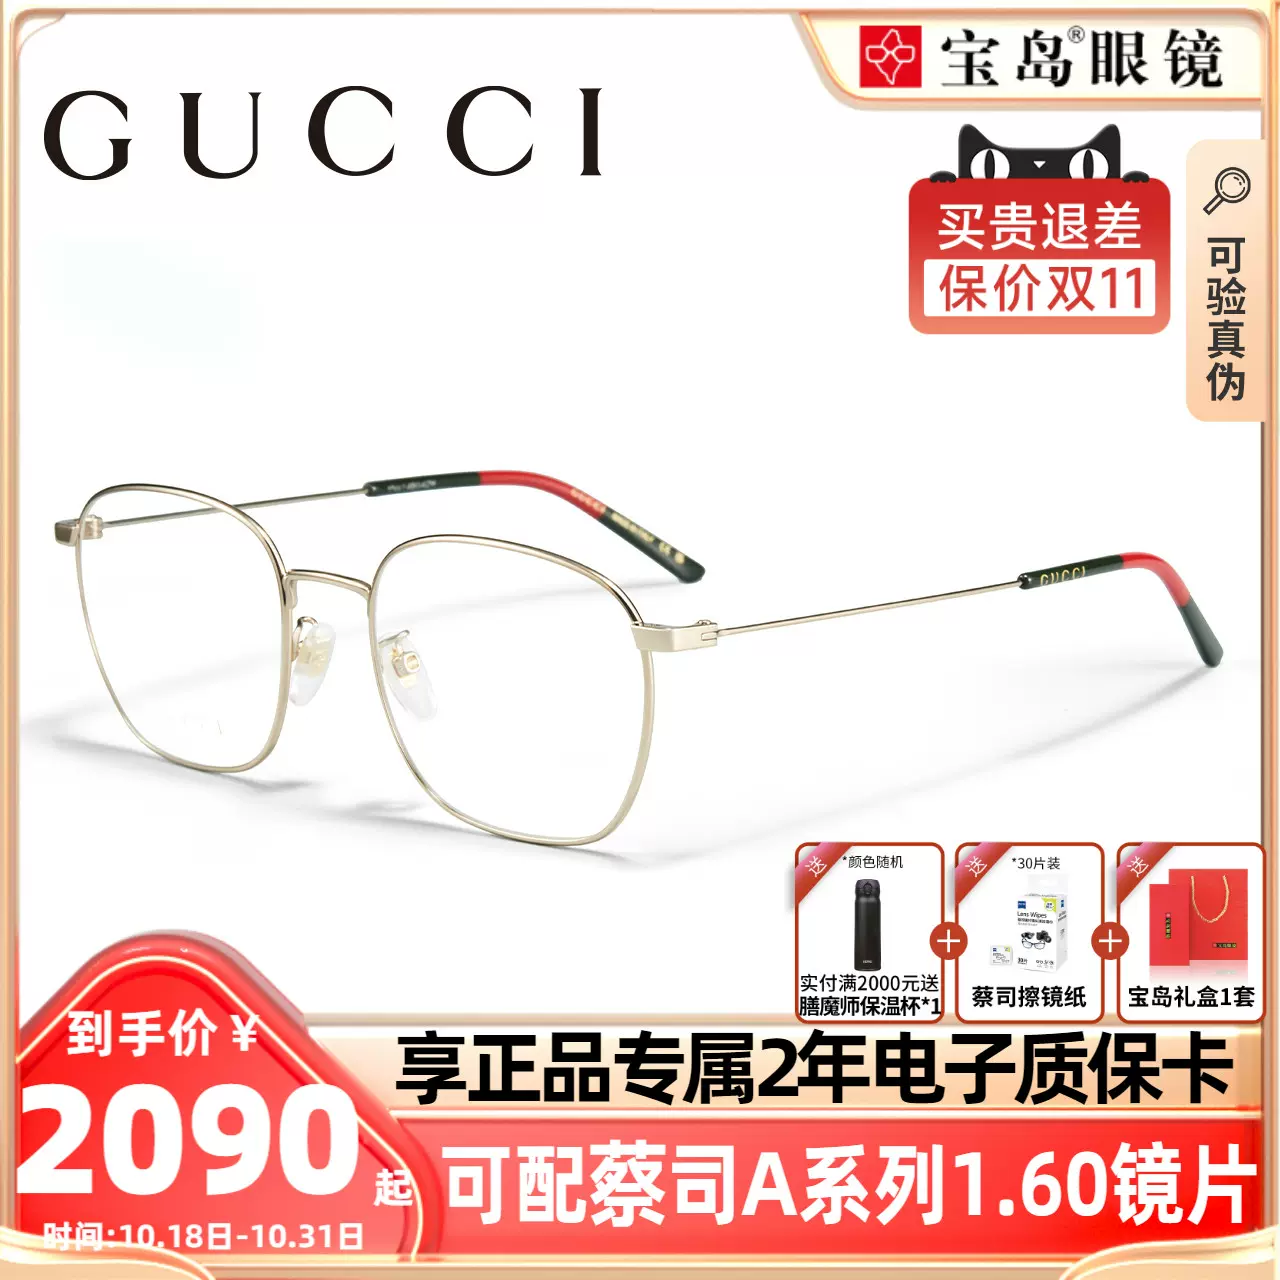 肖战同款古驰GUCCI眼镜框方框眼镜全框眼镜架可配近视镜片GG0681O-Taobao